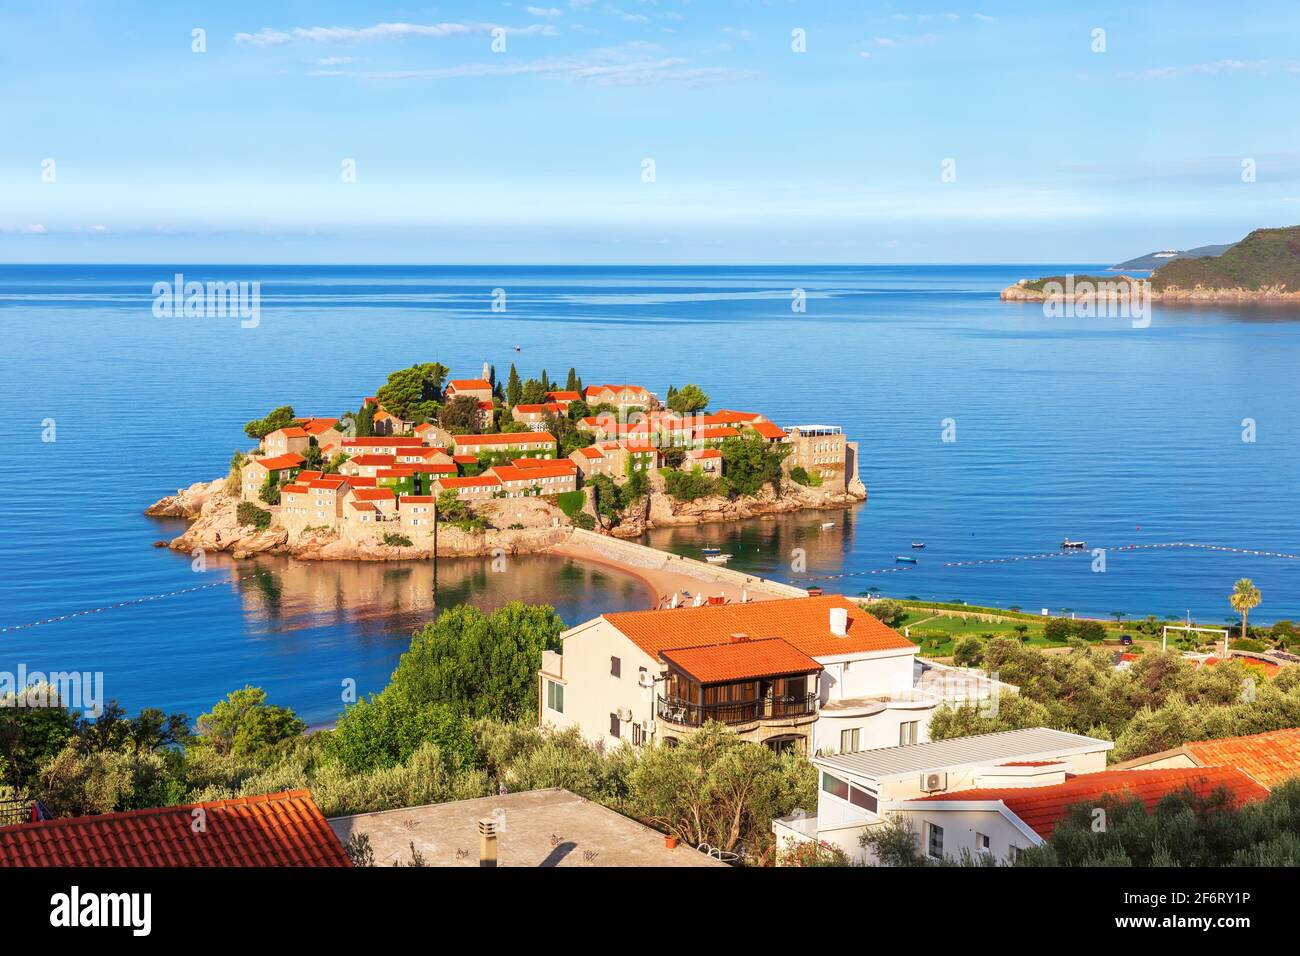 Beautiful Sveti Stefan island, wonderful view, Budva riviera, Montenegro. Stock Photo